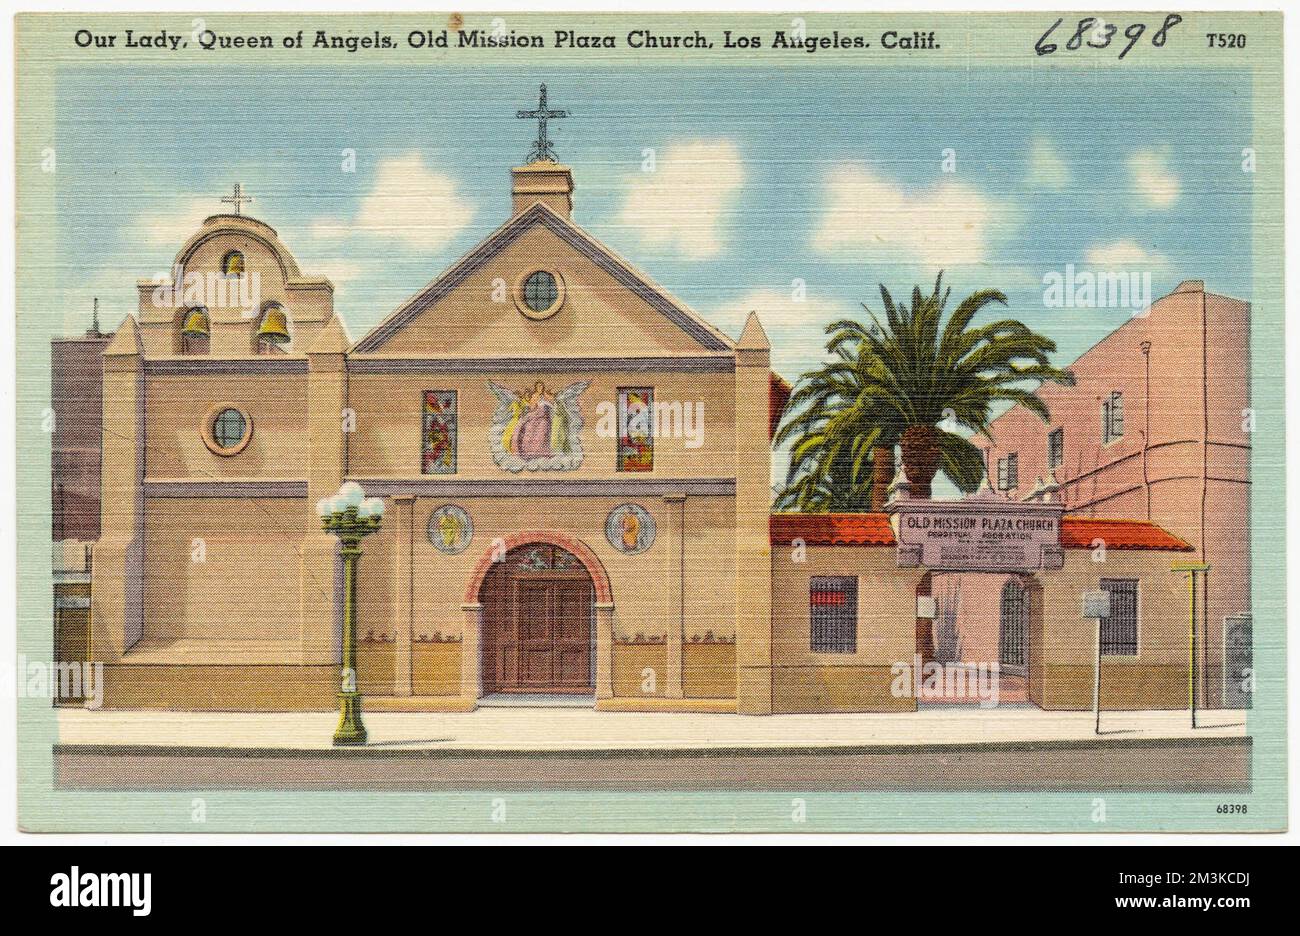 Unsere Lady, Königin der Engel, Old Mission Plaza Church, Los Angeles, Kalifornien , Kirchen, Tichnor Brothers Collection, Postkarten der Vereinigten Staaten Stockfoto